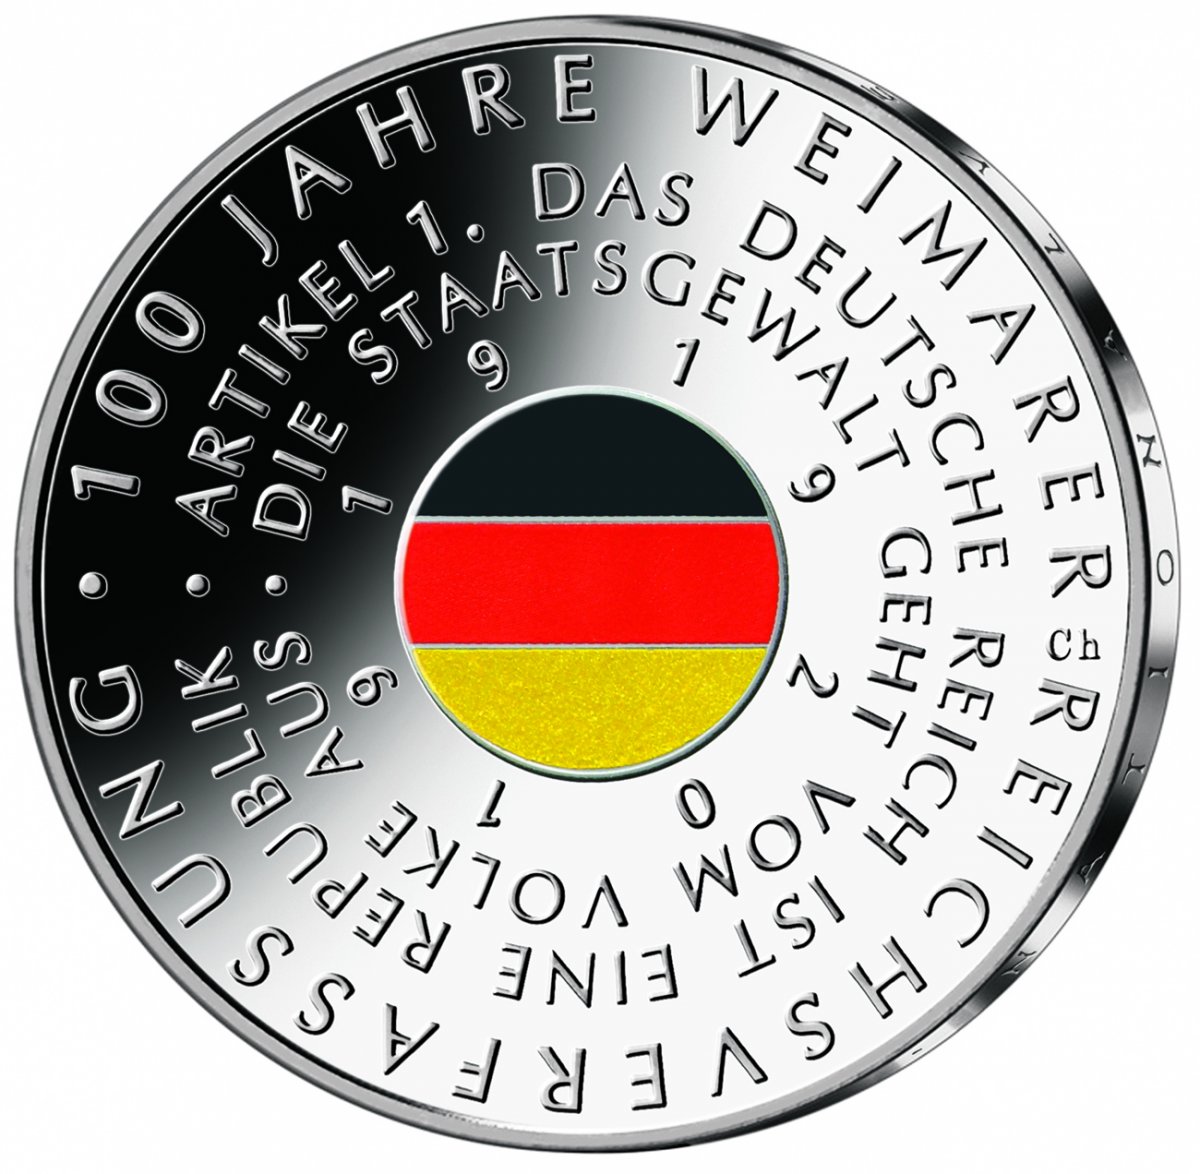 20 euro collector coin 2019 "100 Jahre Weimarer Reichsverfassung" 